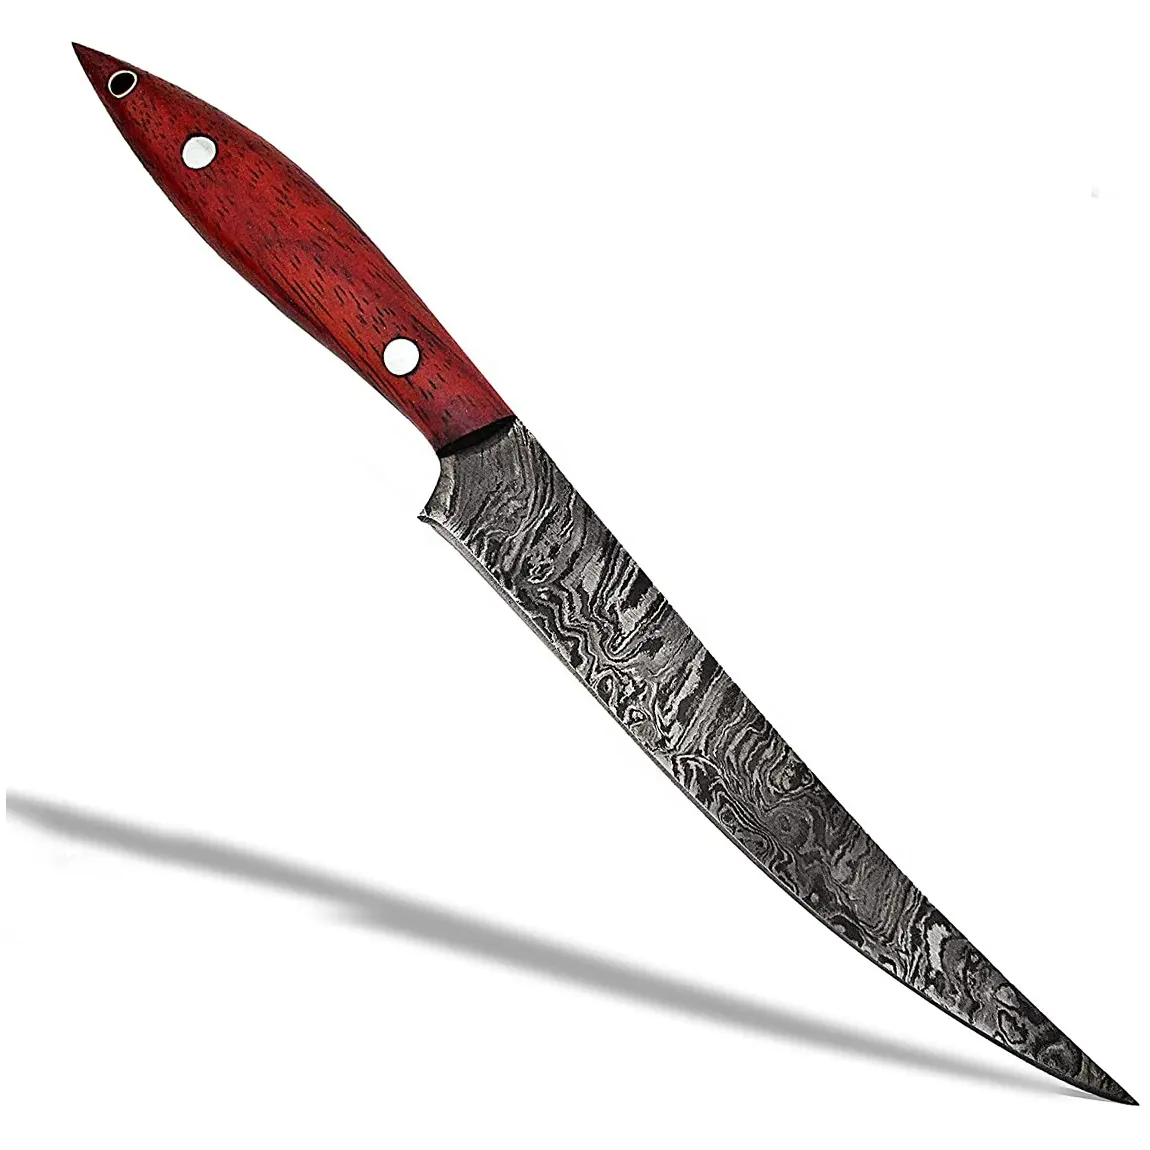 Yeni varış fileto bıçak özel el yapımı şam çelik fileto bıçağı balıkçılık aracı kemiksi saplı bıçak deri kılıf